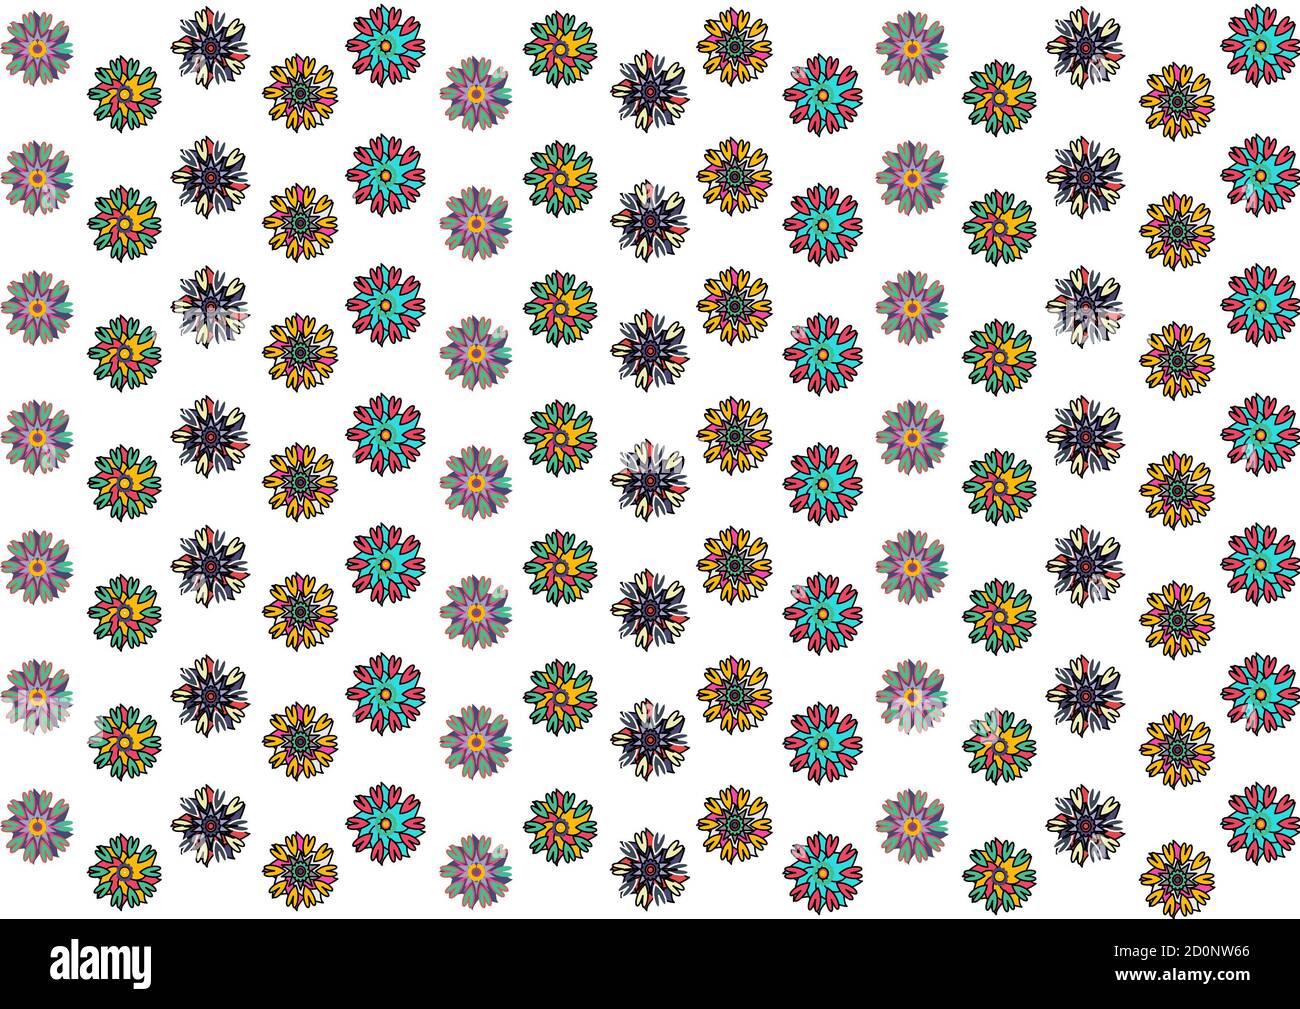 Bunte kreative Blumen-Ikonen, isoliert, Vintage-Stil, Muster für  Geschenkpapier Stockfotografie - Alamy